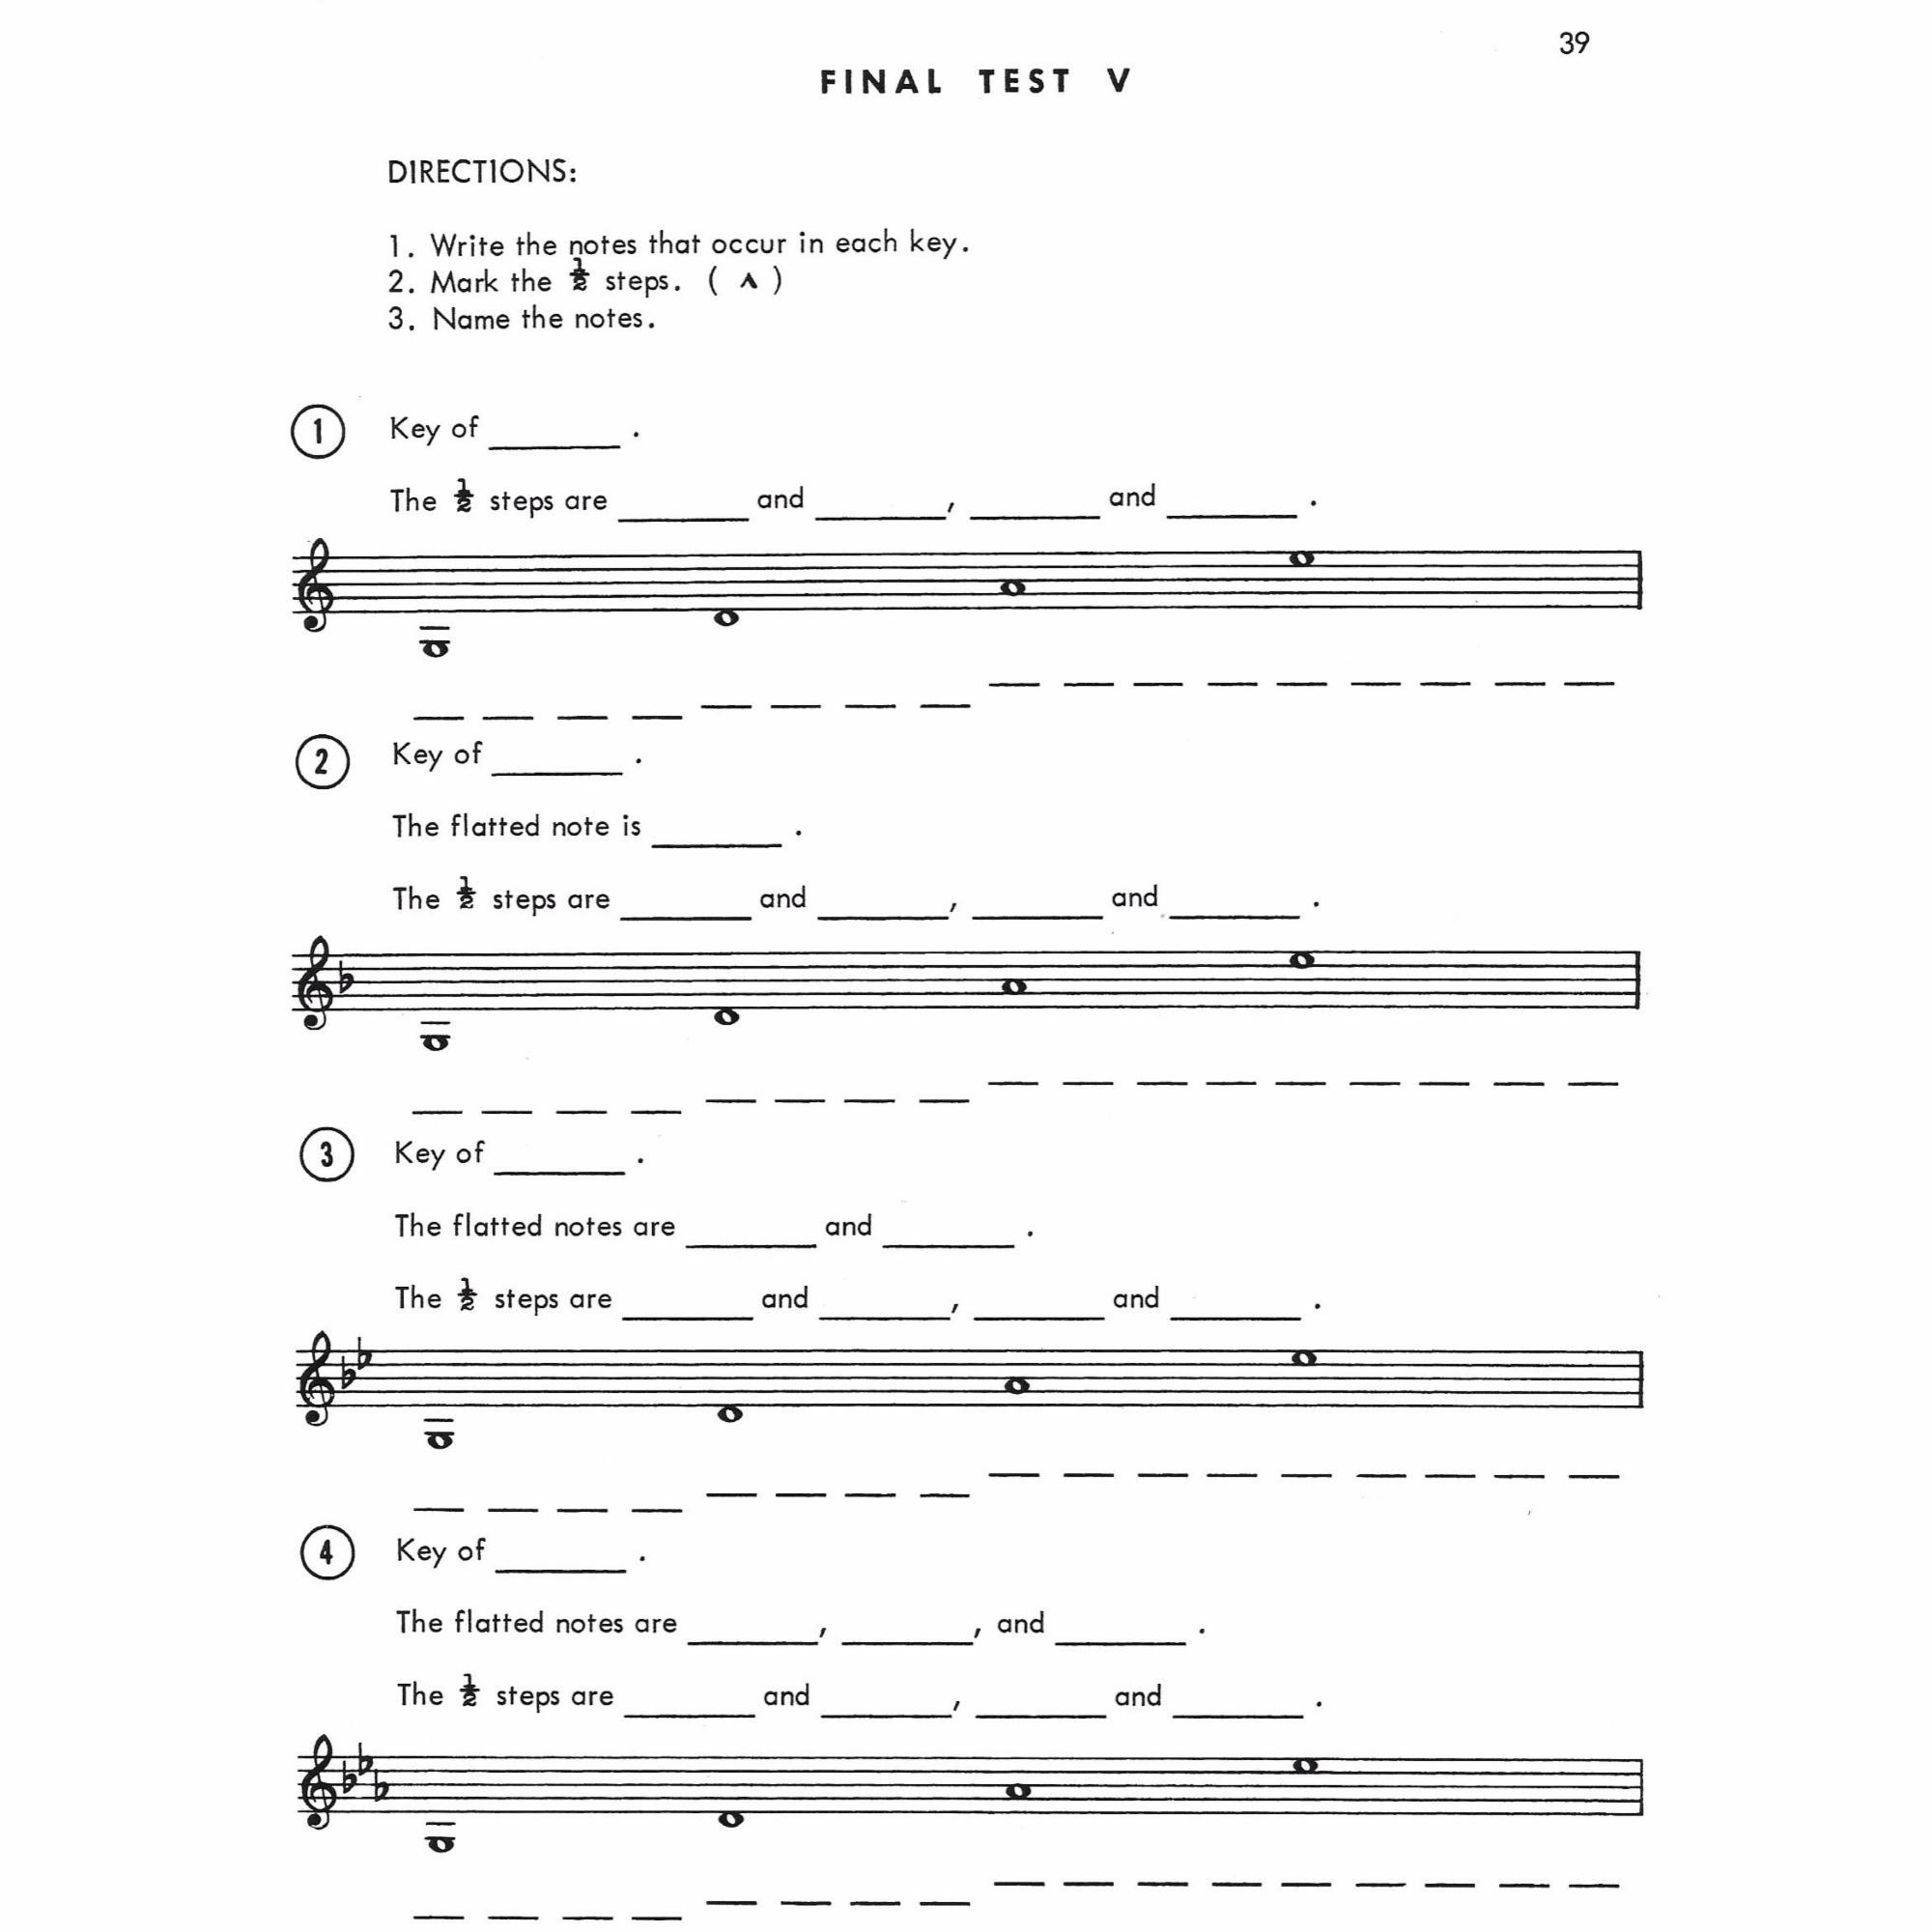 Sample: Violin (Pg. 39)